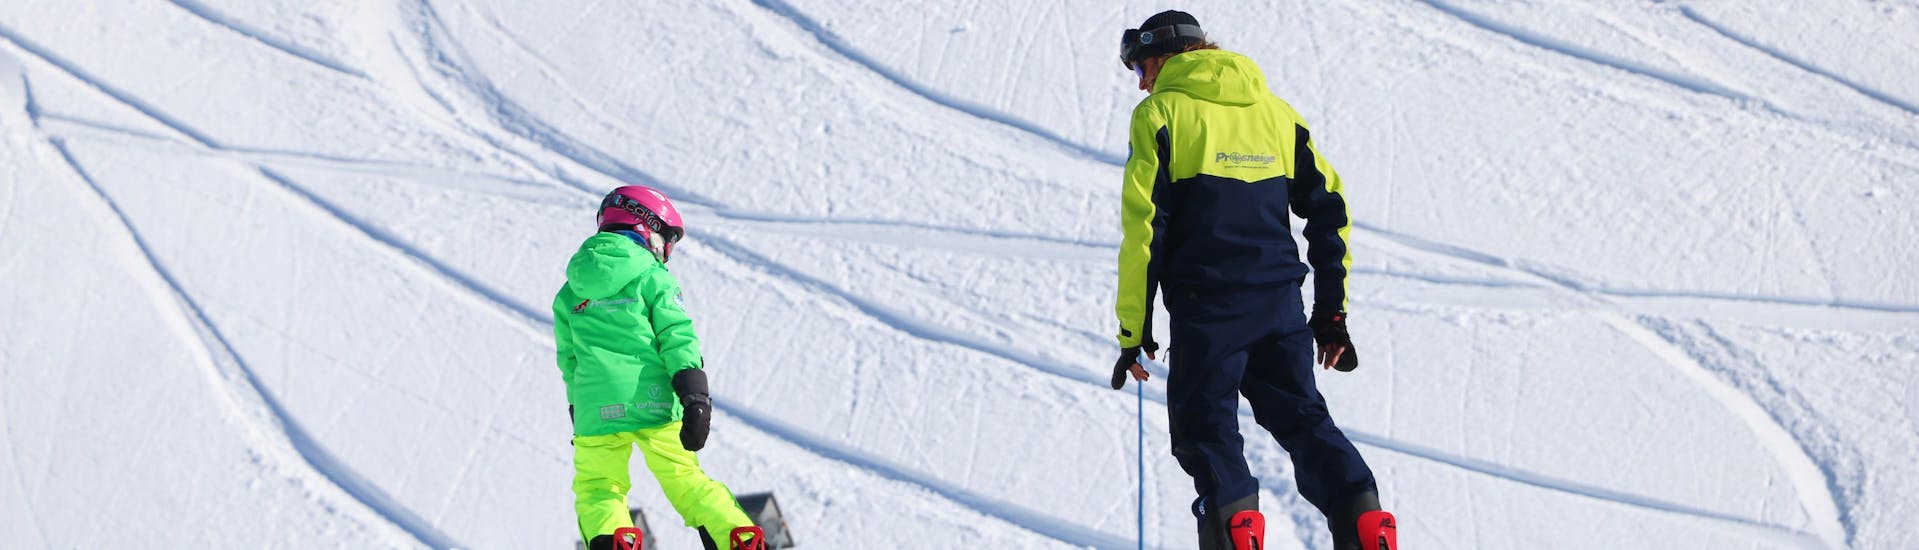 Un enfant apprend le snowboard sous l'œil attentif de son moniteur pendant un Cours particulier de snowboard avec Prosneige Méribel.